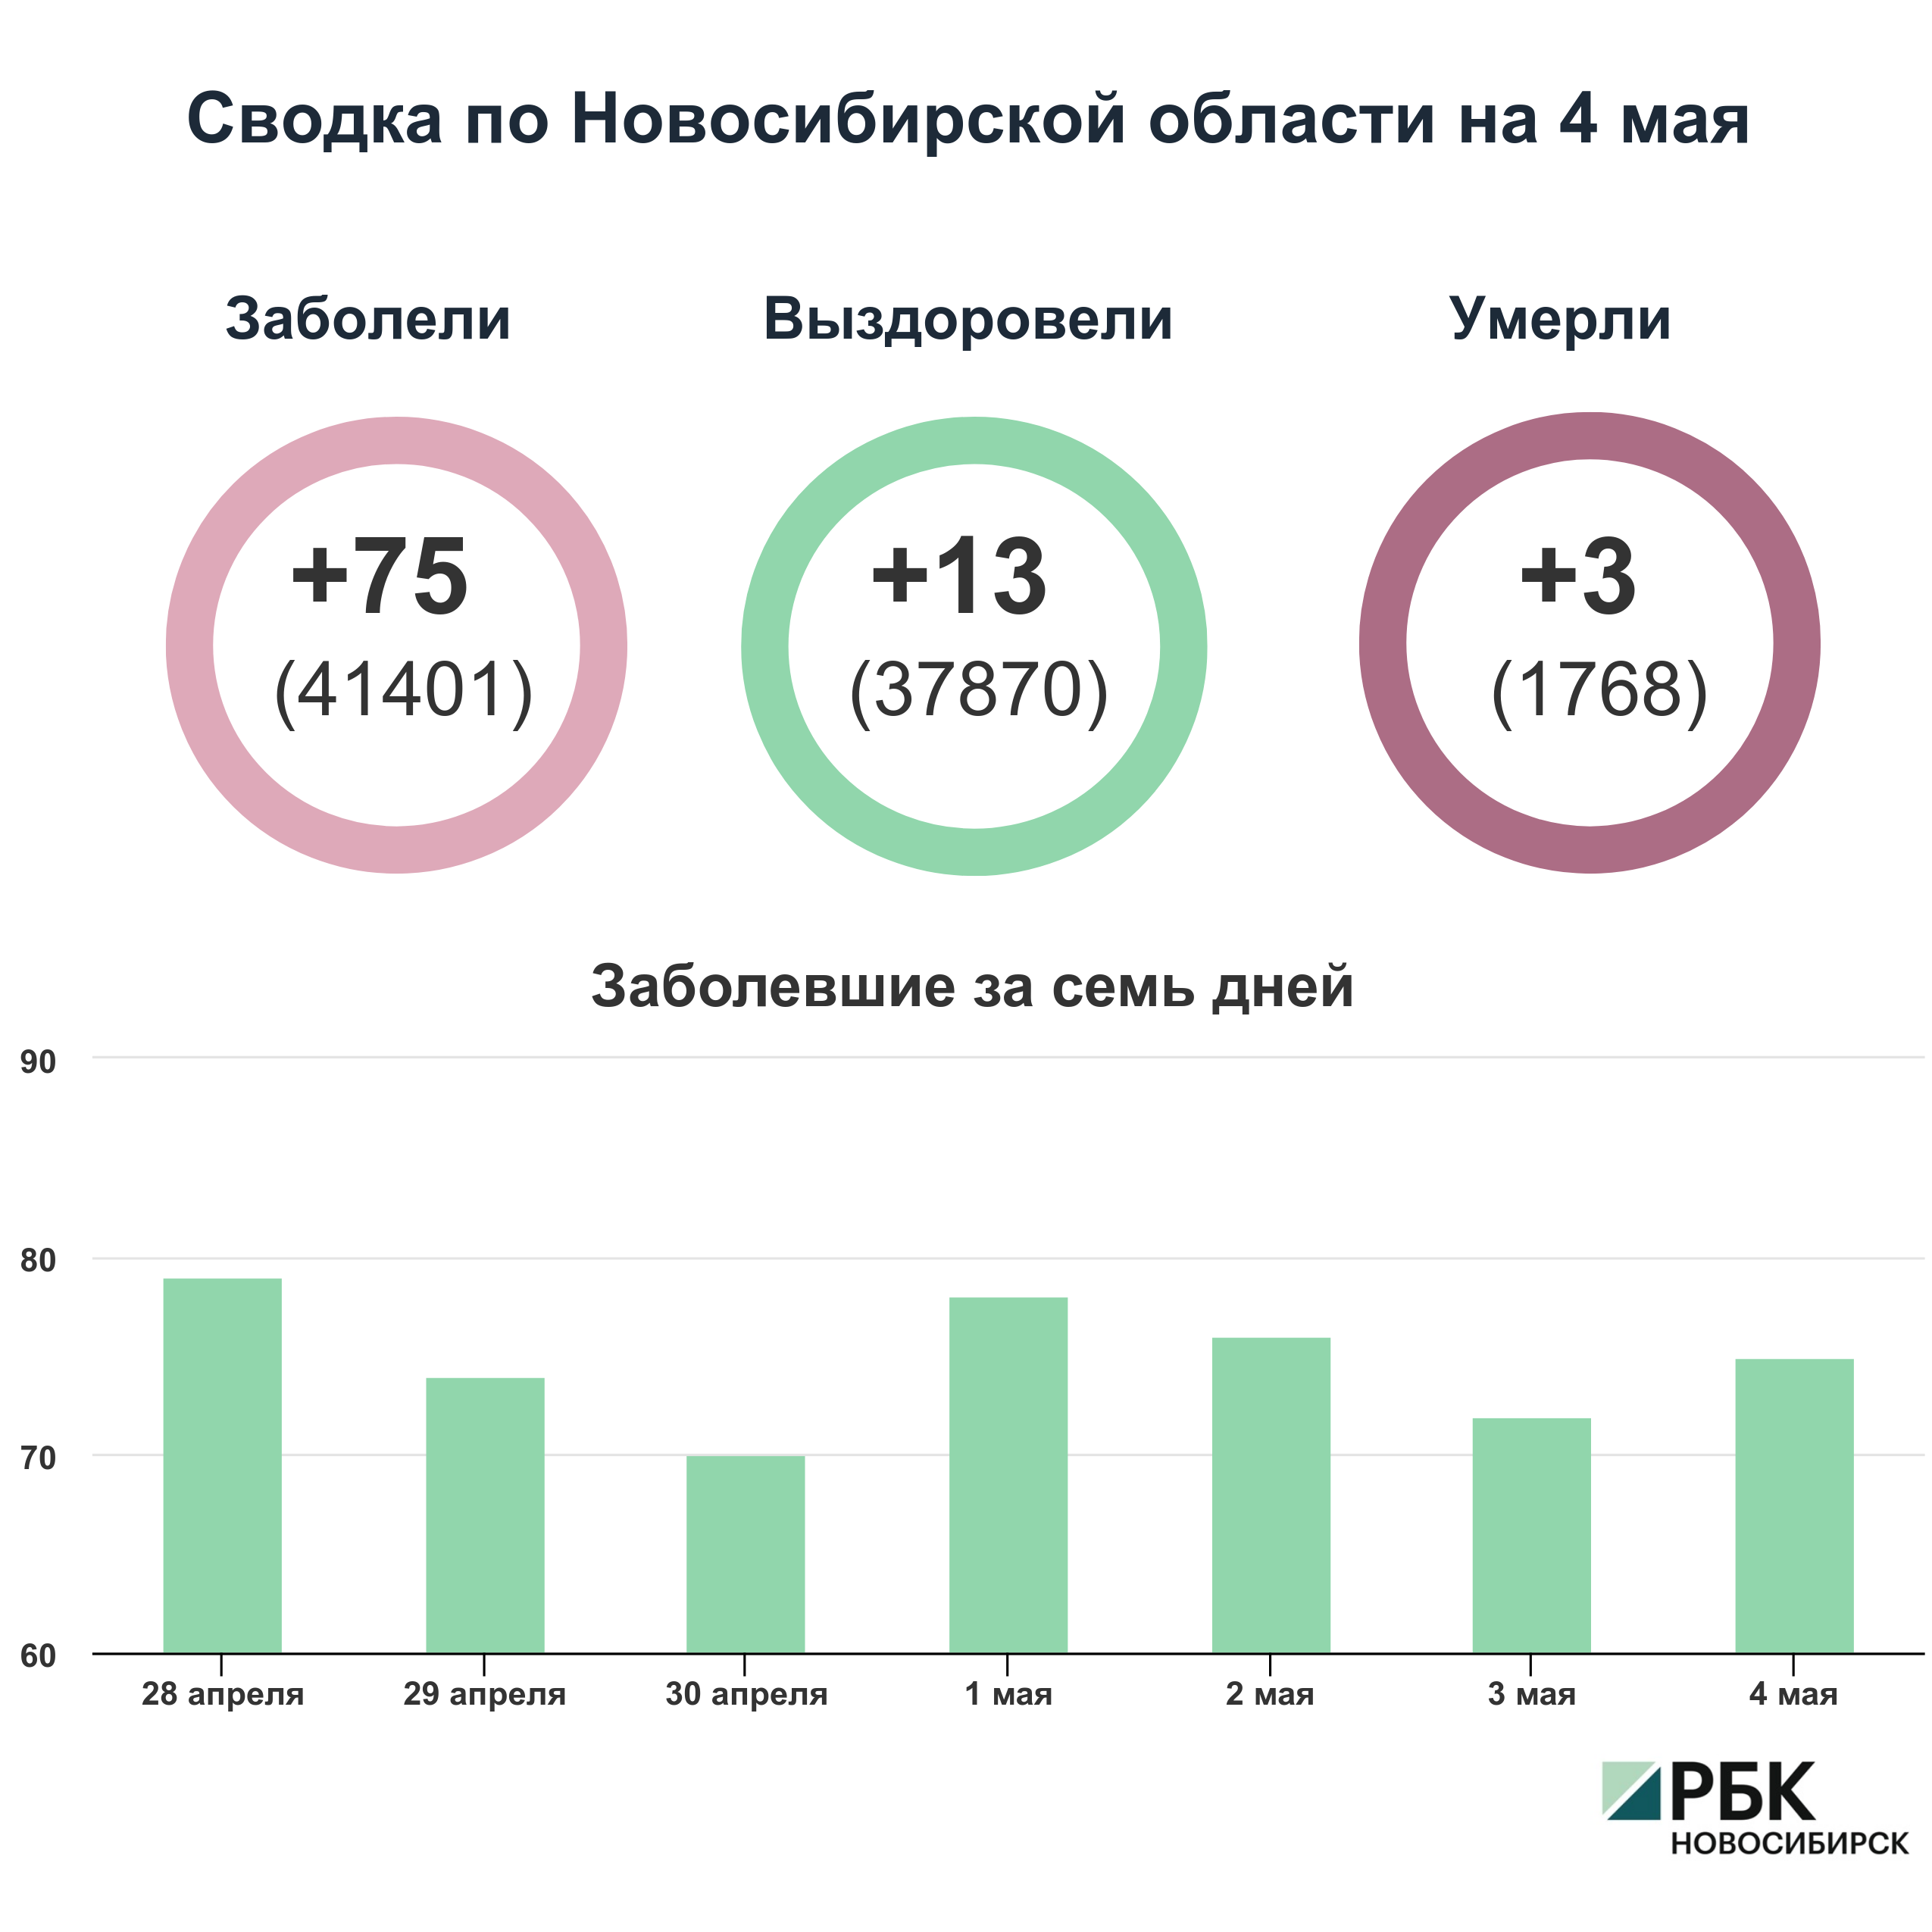 Коронавирус в Новосибирске: сводка на 4 мая